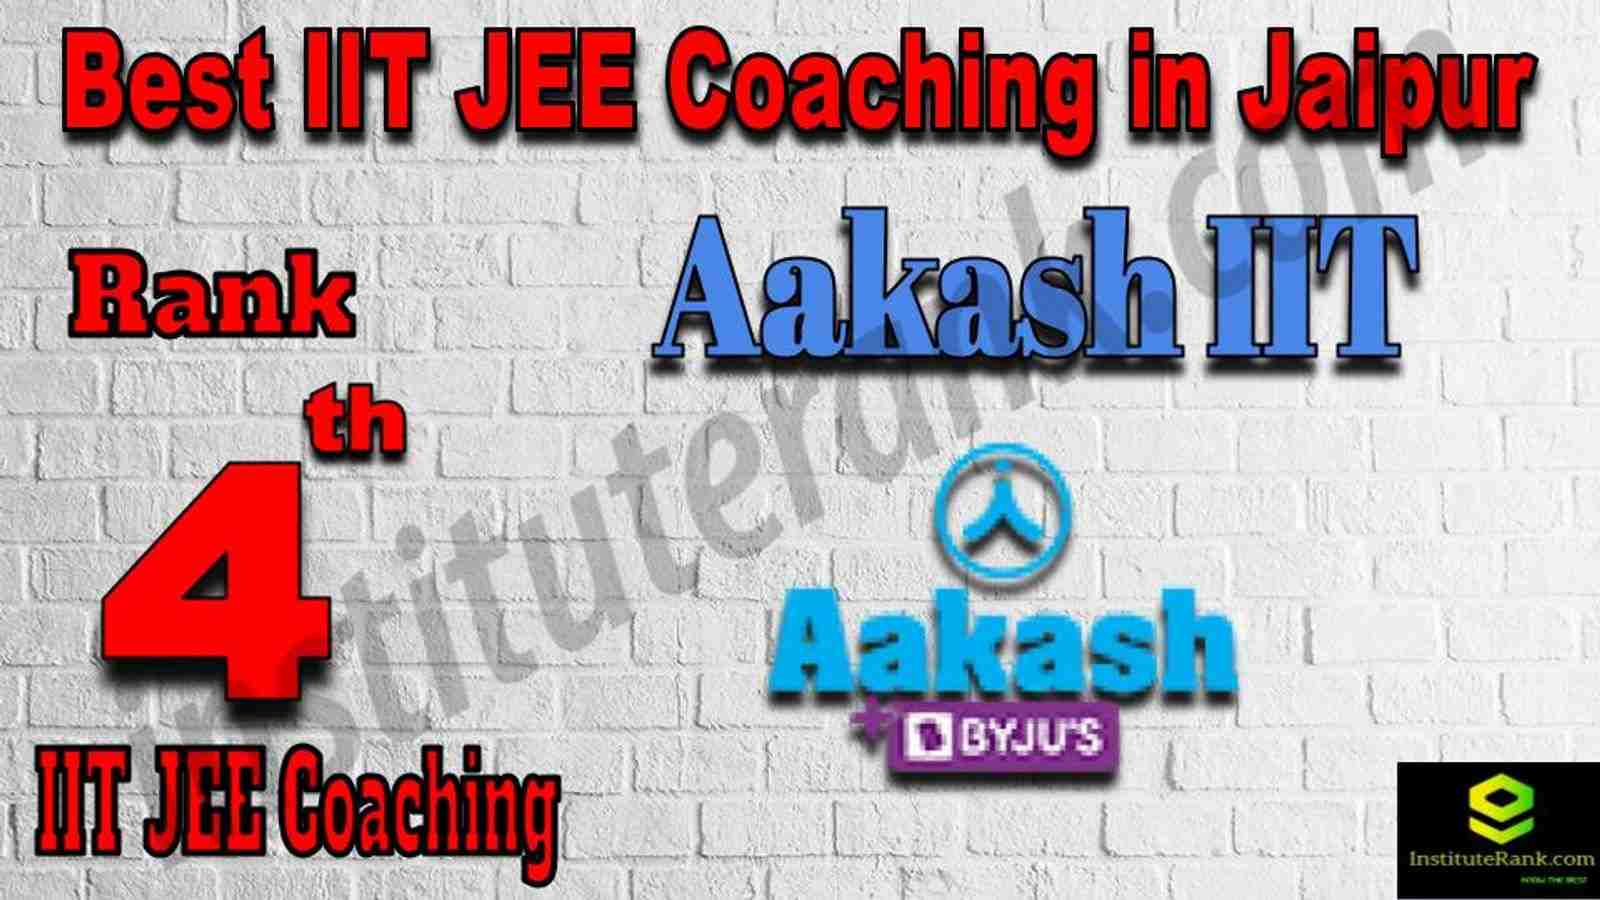 4th Best IIT JEE Coaching in Jaipur